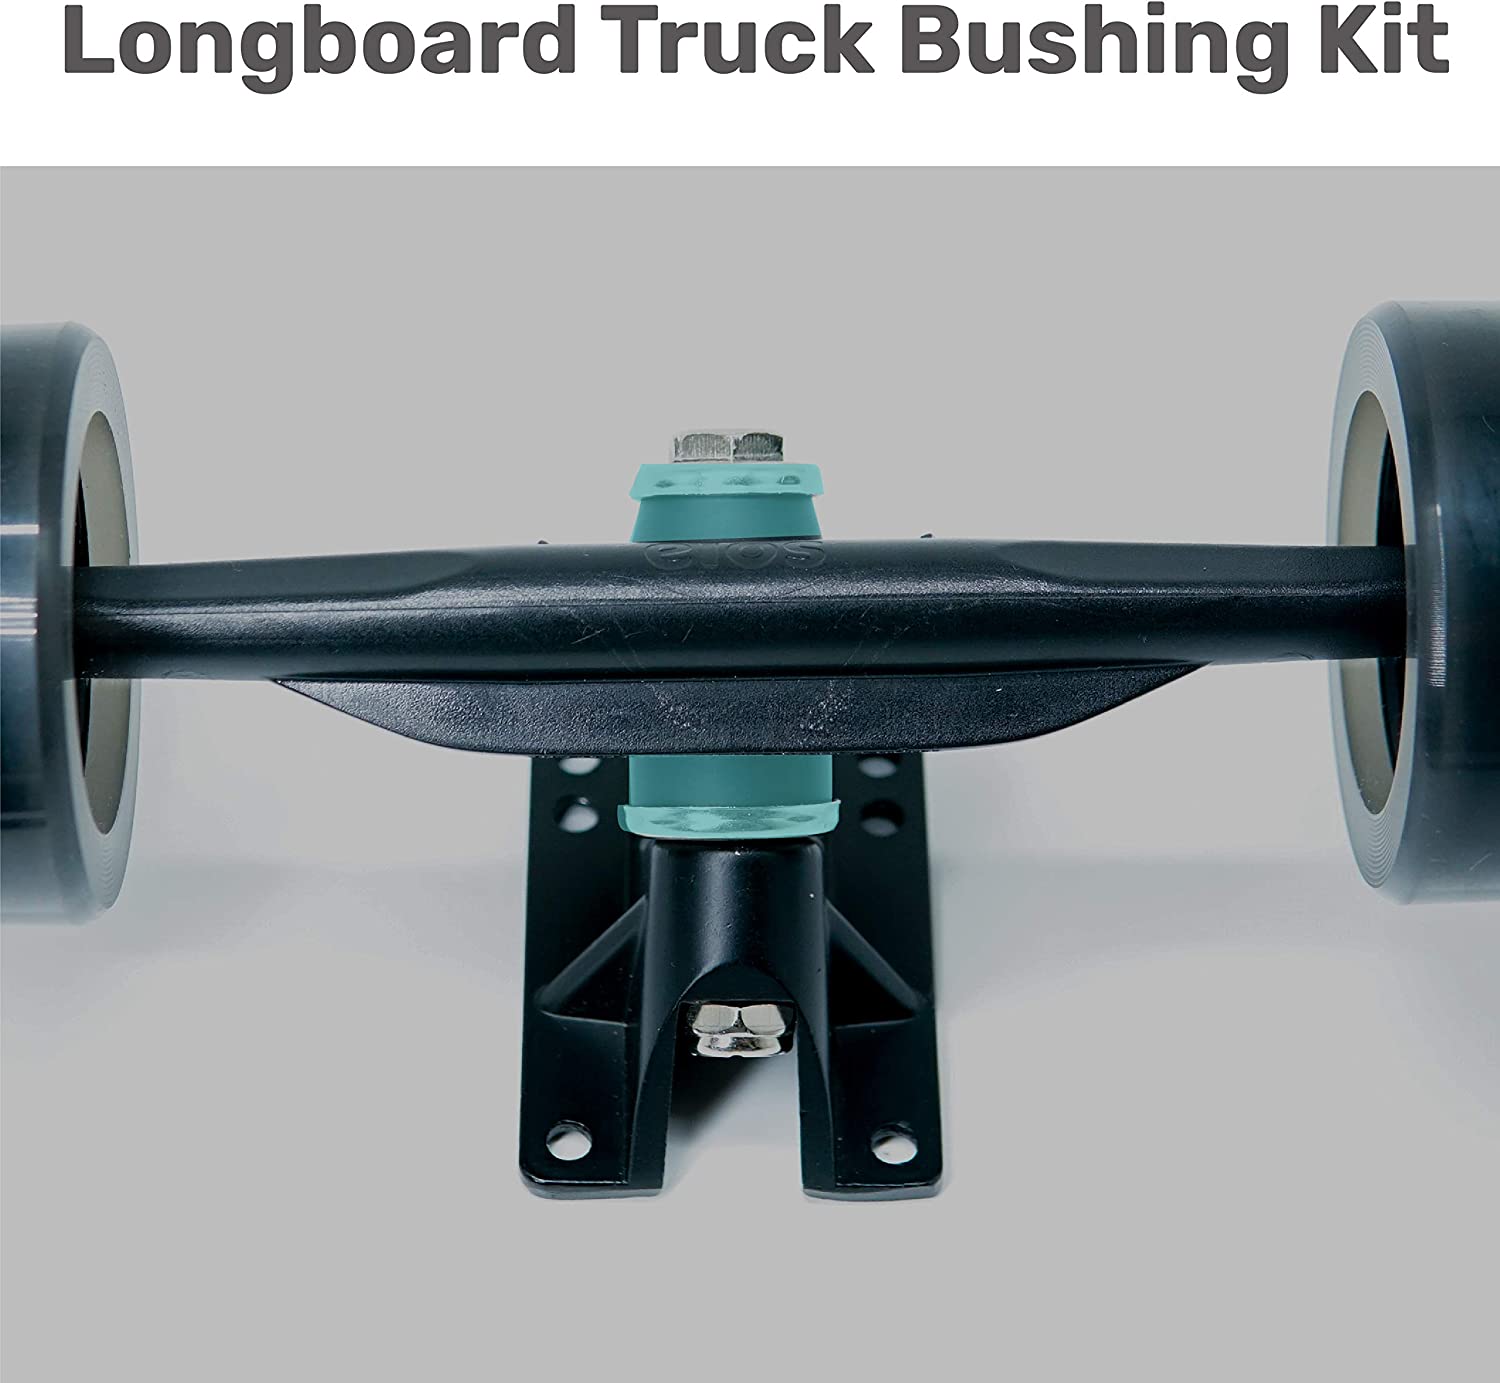 Bushing Kit | スケートボード コアブッシュ